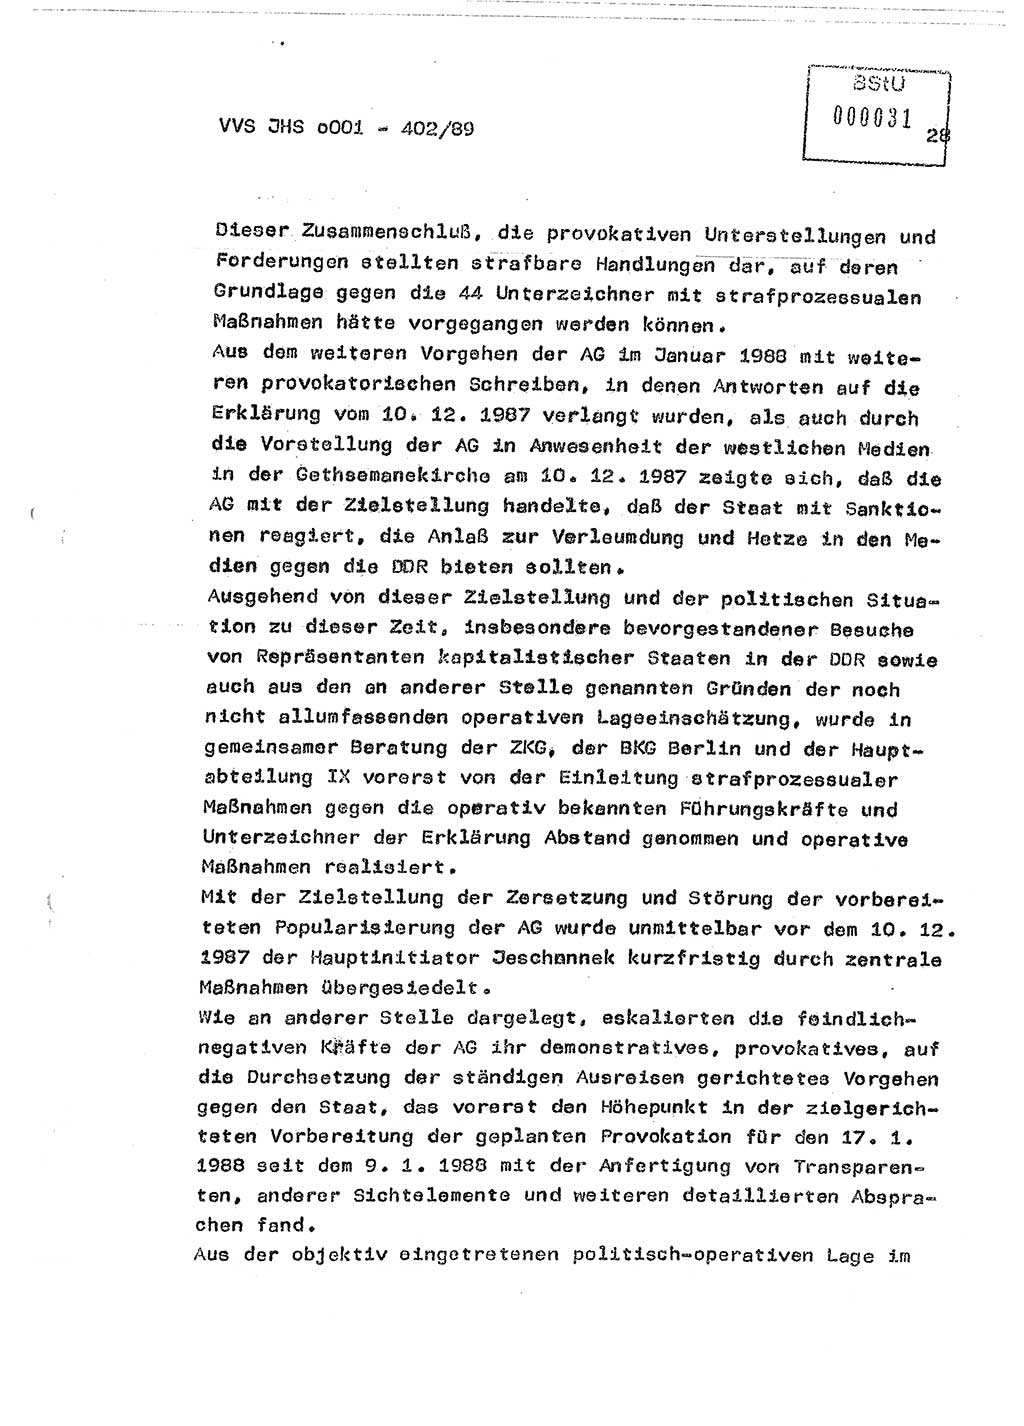 Diplomarbeit Major Günter Müller (HA Ⅸ/9), Ministerium für Staatssicherheit (MfS) [Deutsche Demokratische Republik (DDR)], Juristische Hochschule (JHS), Vertrauliche Verschlußsache (VVS) o001-402/89, Potsdam 1989, Seite 28 (Dipl.-Arb. MfS DDR JHS VVS o001-402/89 1989, S. 28)